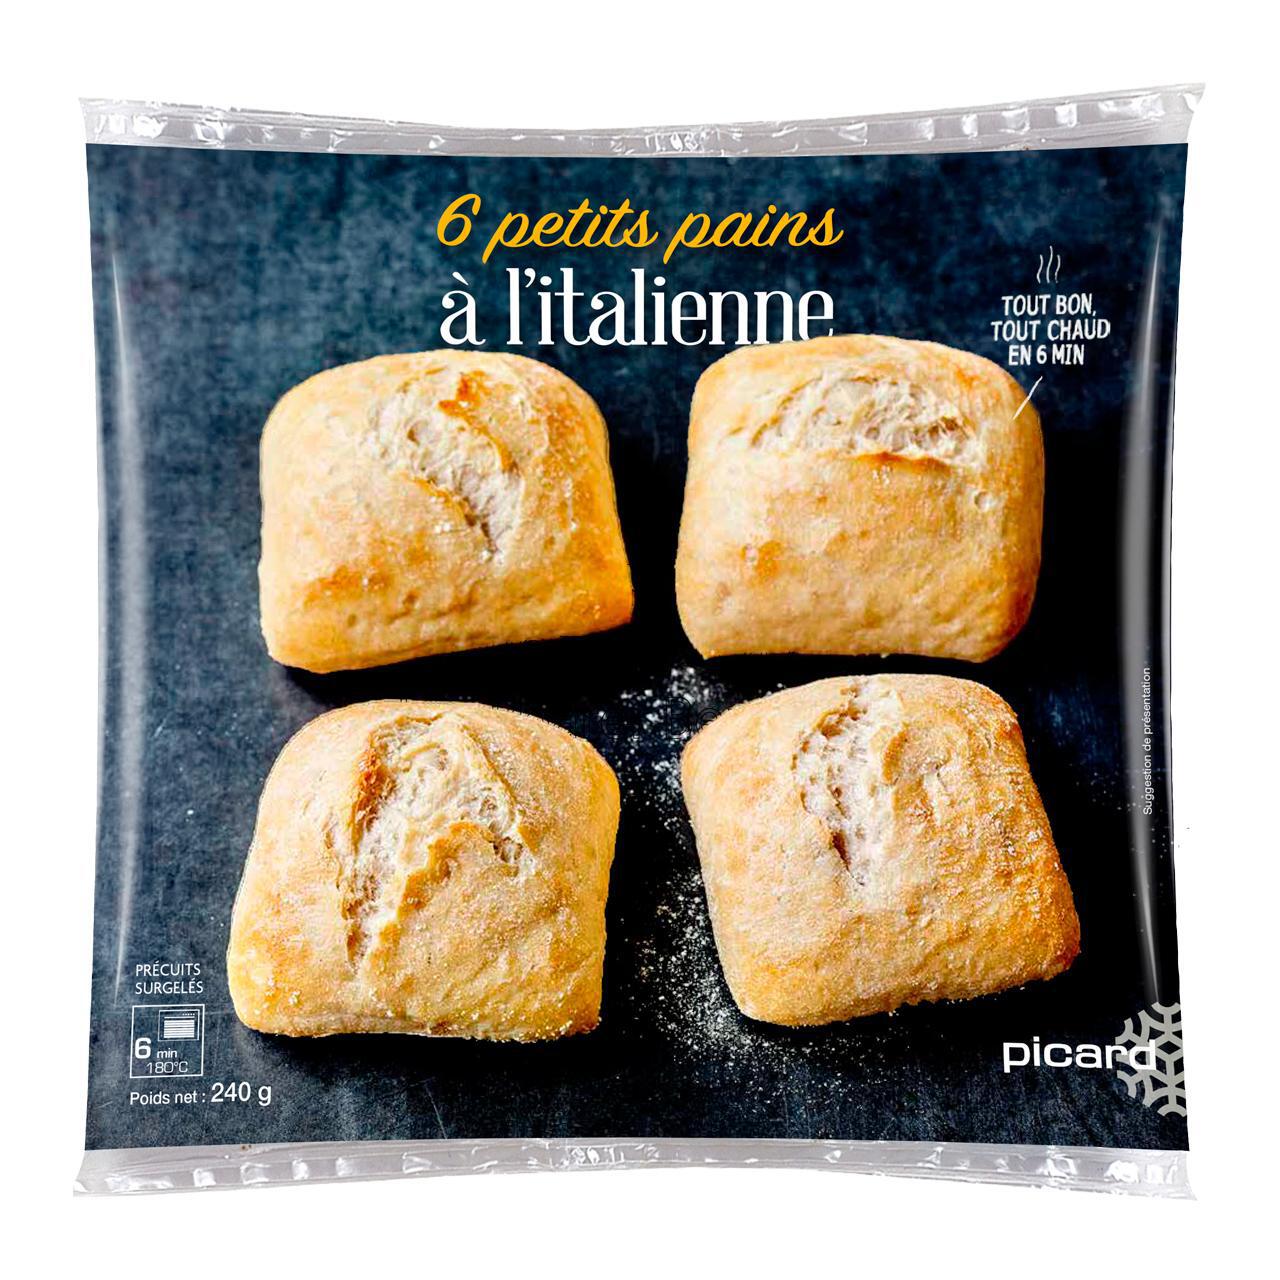 Picard Mini Italian Bread Rolls 4 per pack